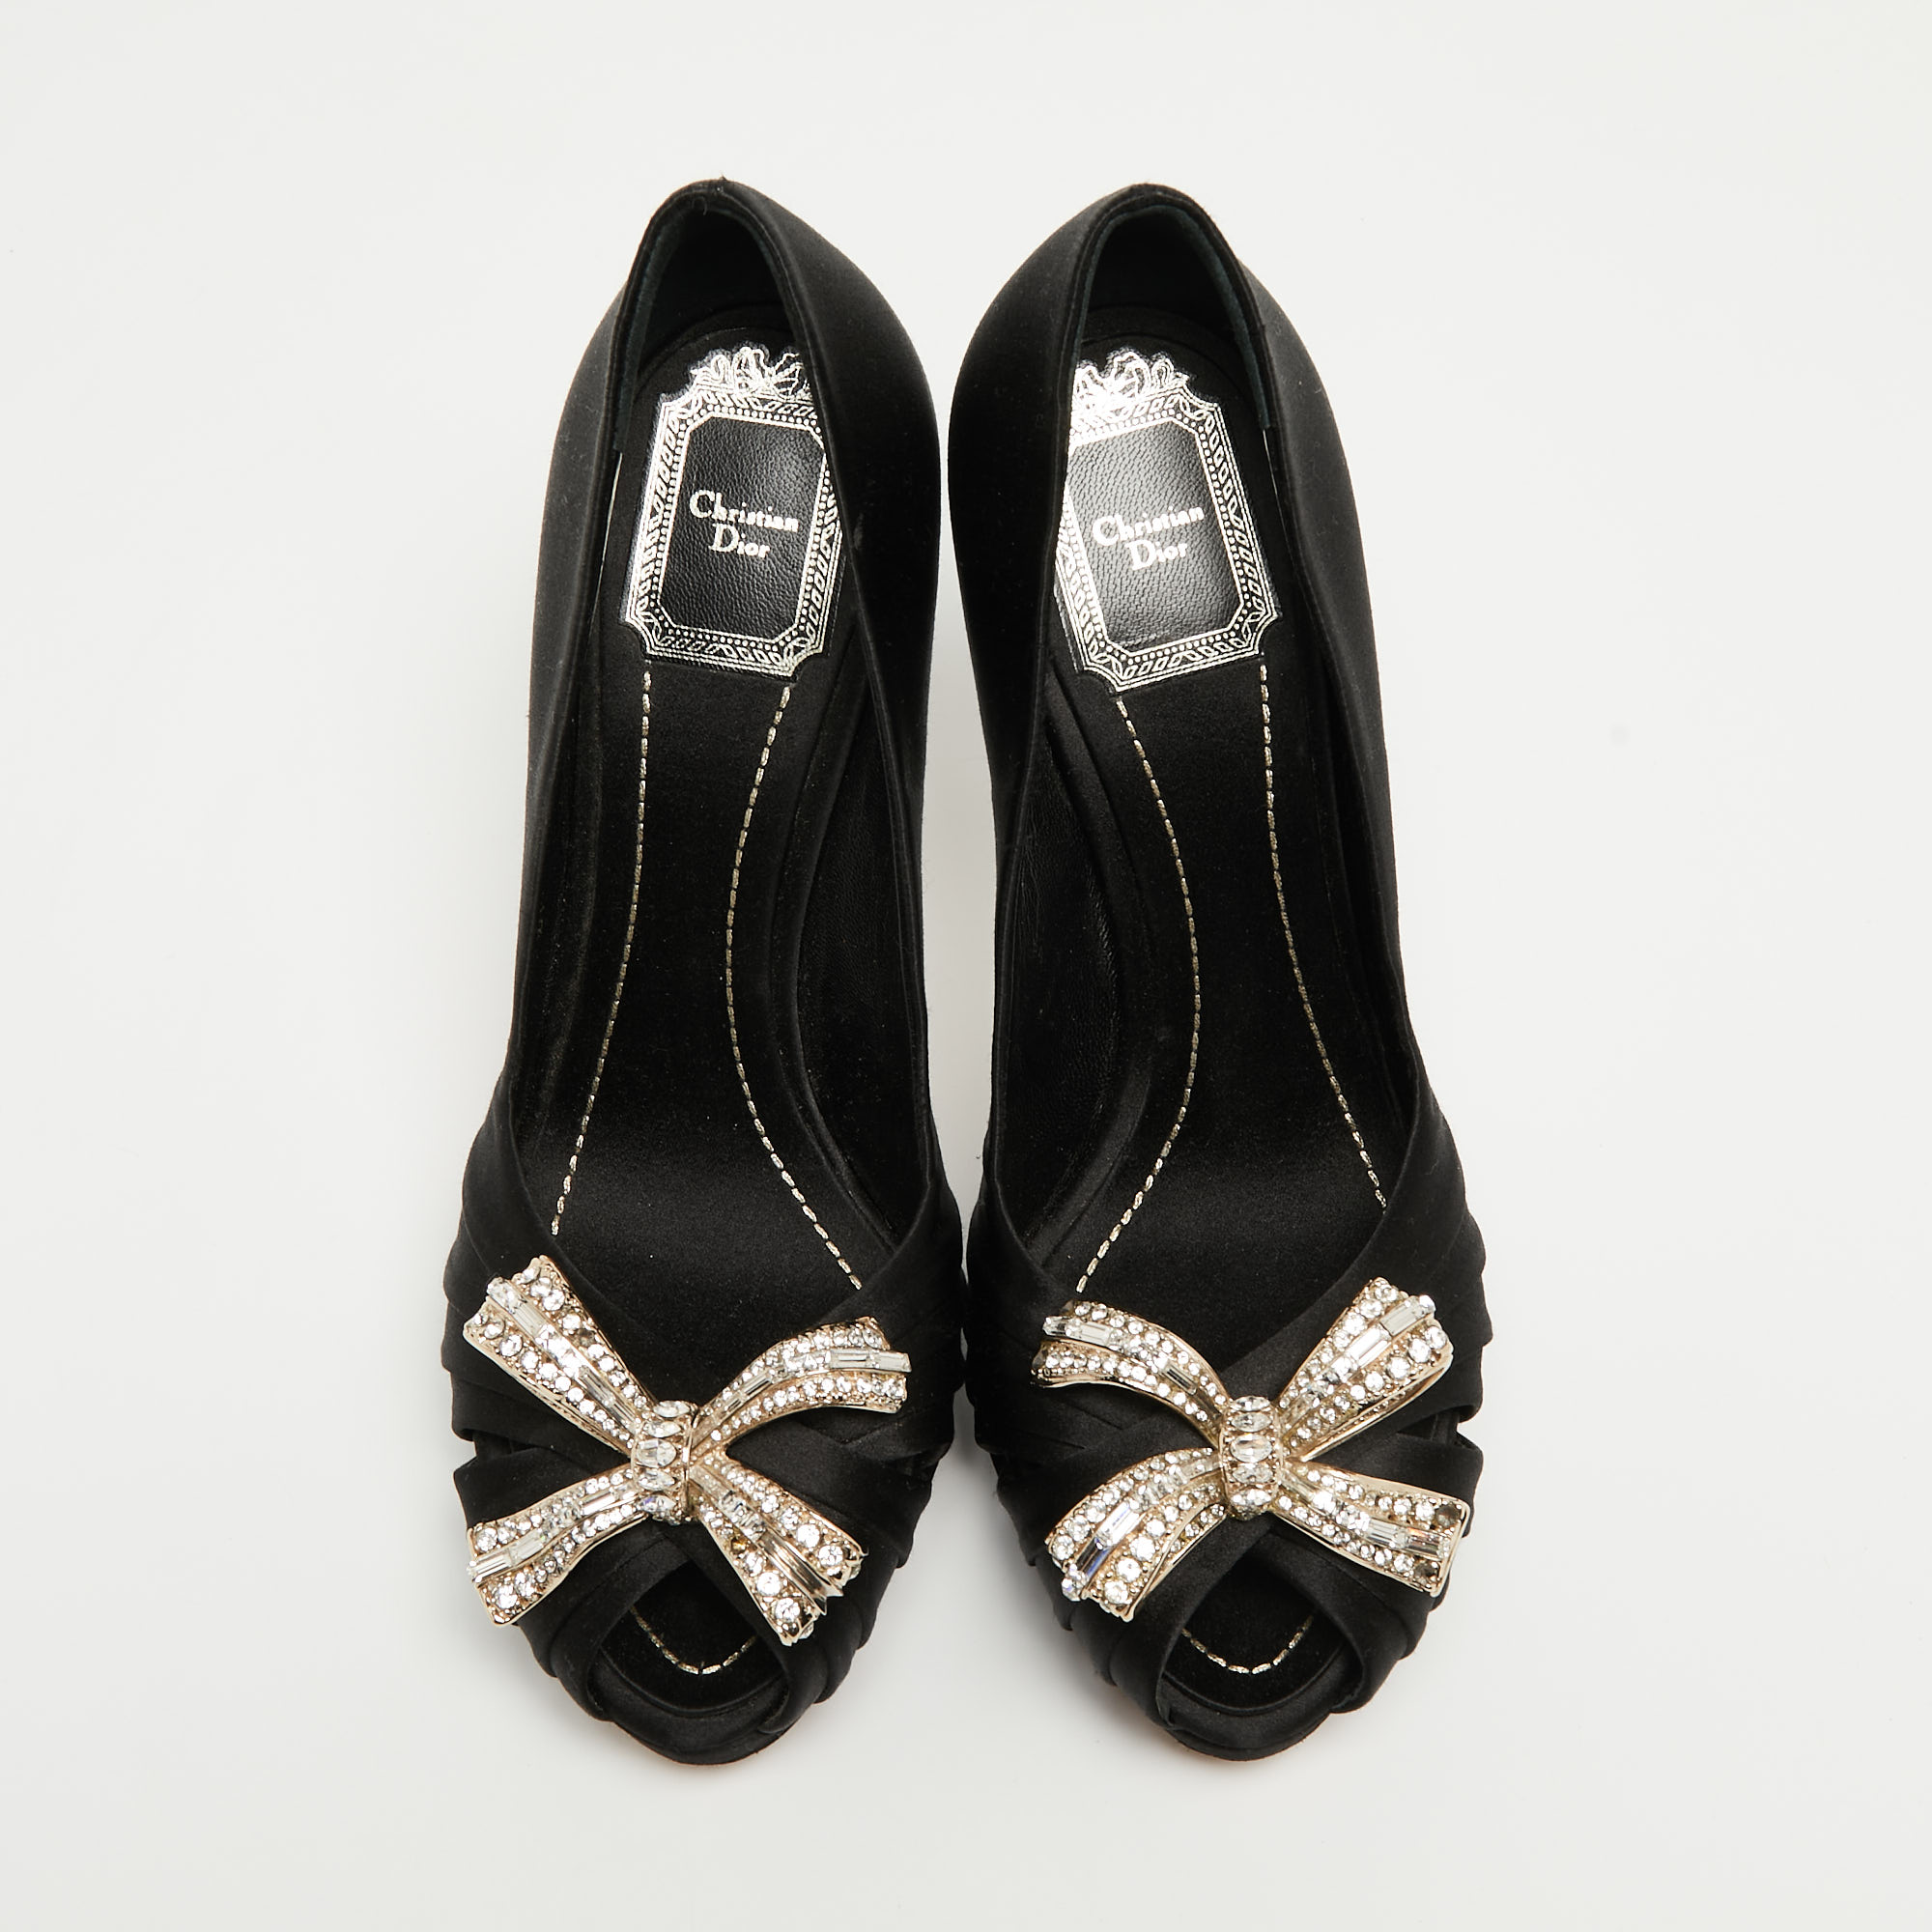 Dior Black Satin Crystal Embellished Peep Toe Platform Pumps Size 37